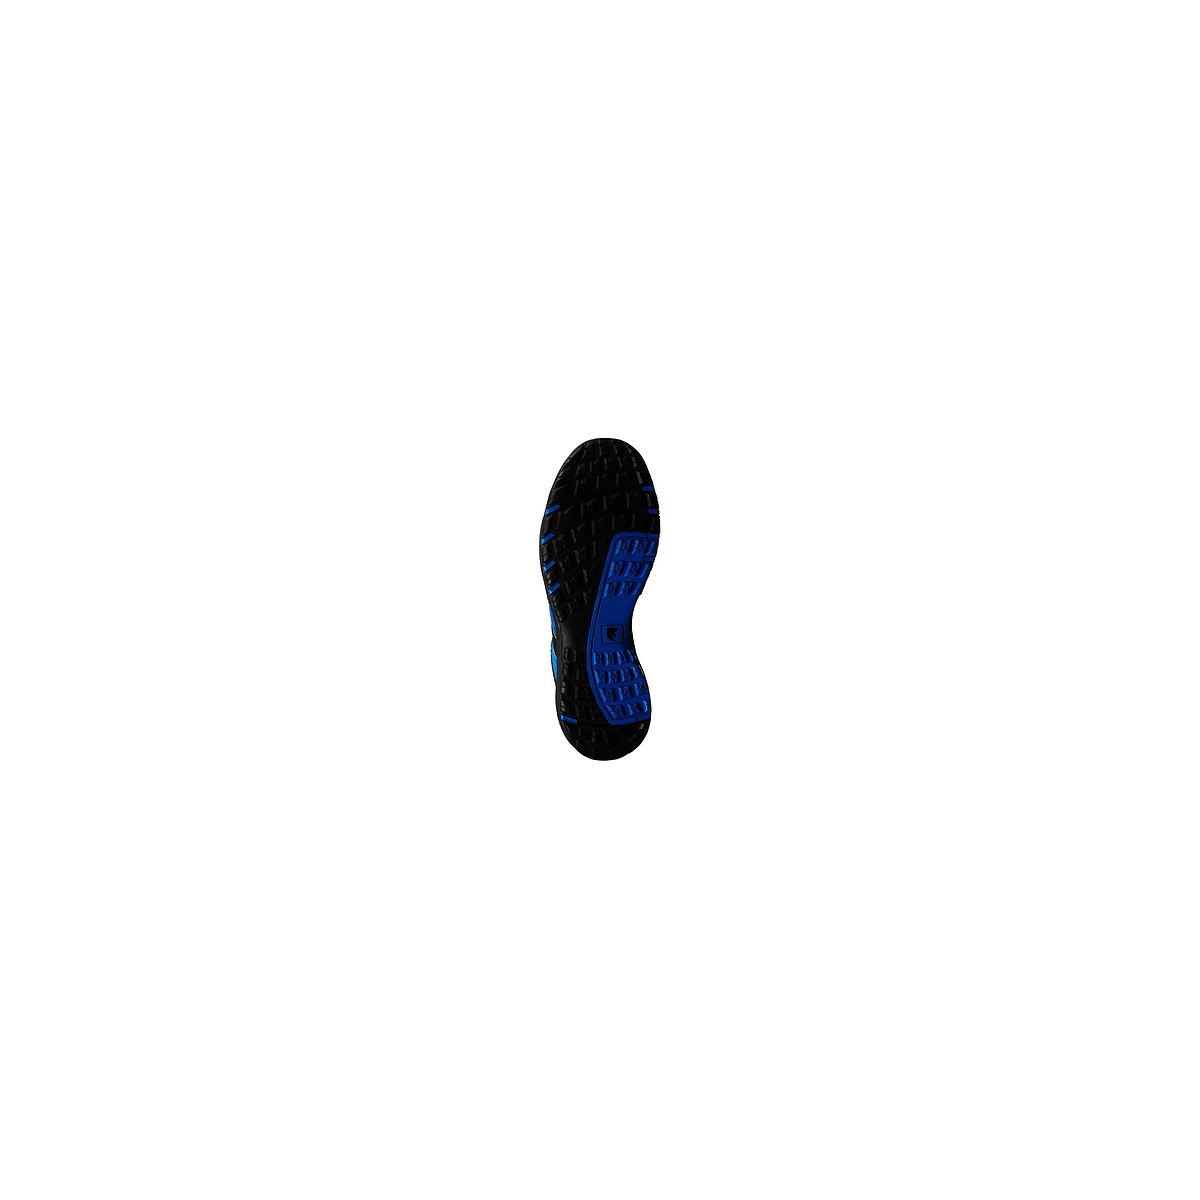 Chaussures de sécurité GYPSE S1P Basse Bleu/Noir - Coverguard - Taille 44 1